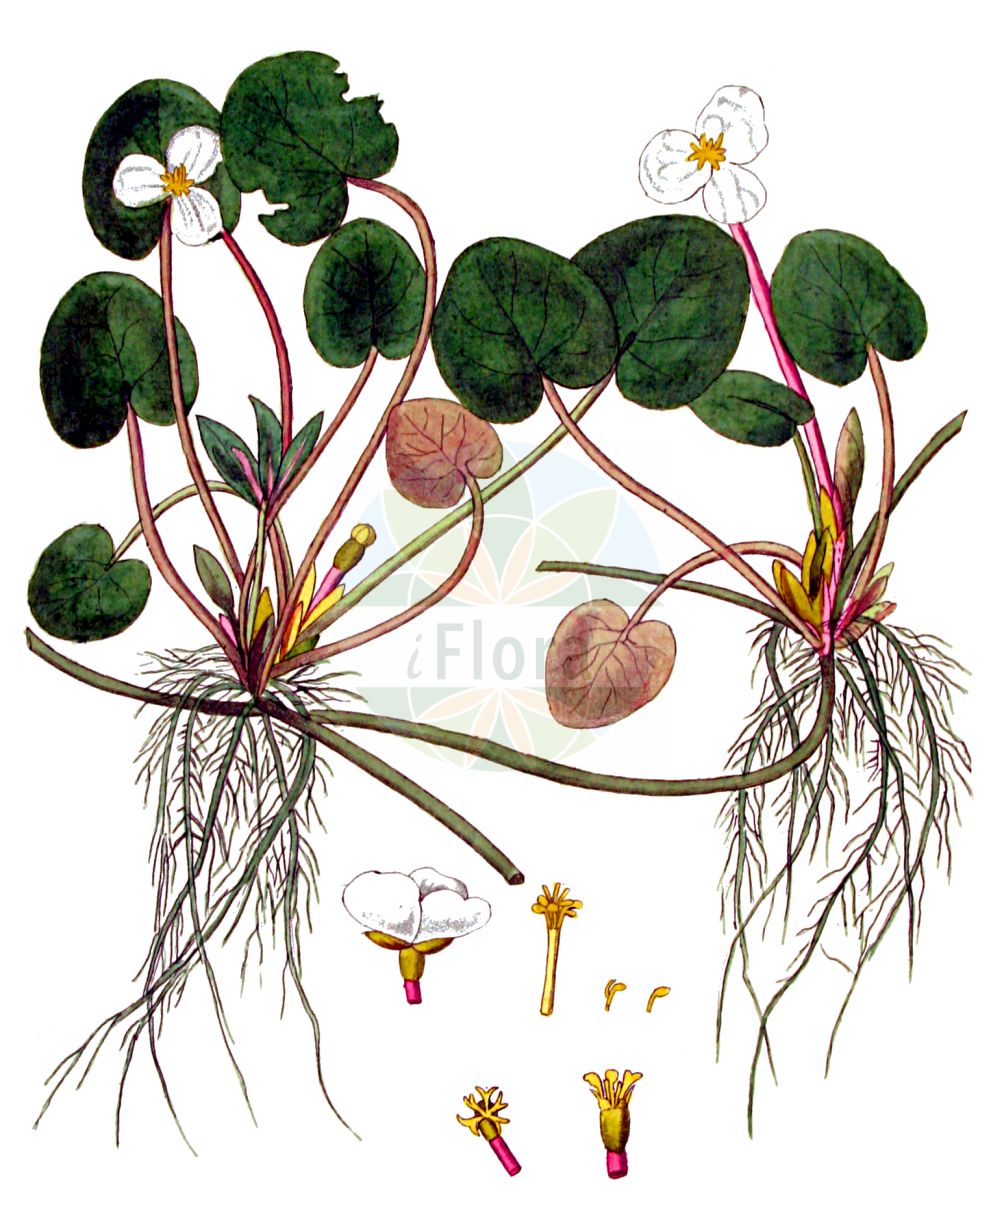 Historische Abbildung von Hydrocharis morsus-ranae (Europäischer Froschbiß - Frogbit). Das Bild zeigt Blatt, Bluete, Frucht und Same. ---- Historical Drawing of Hydrocharis morsus-ranae (Europäischer Froschbiß - Frogbit). The image is showing leaf, flower, fruit and seed.(Hydrocharis morsus-ranae,Europäischer Froschbiß,Frogbit,Hydrocharis morsus-ranae,Europaeischer Froschbiss,Froschbiss,Frogbit,European Frogbit,Common Frogbit,Hydrocharis,Froschbiß,Frogbit,Hydrocharitaceae,Froschbissgewächse,Frogbit family,Blatt,Bluete,Frucht,Same,leaf,flower,fruit,seed,Kops (1800-1934))